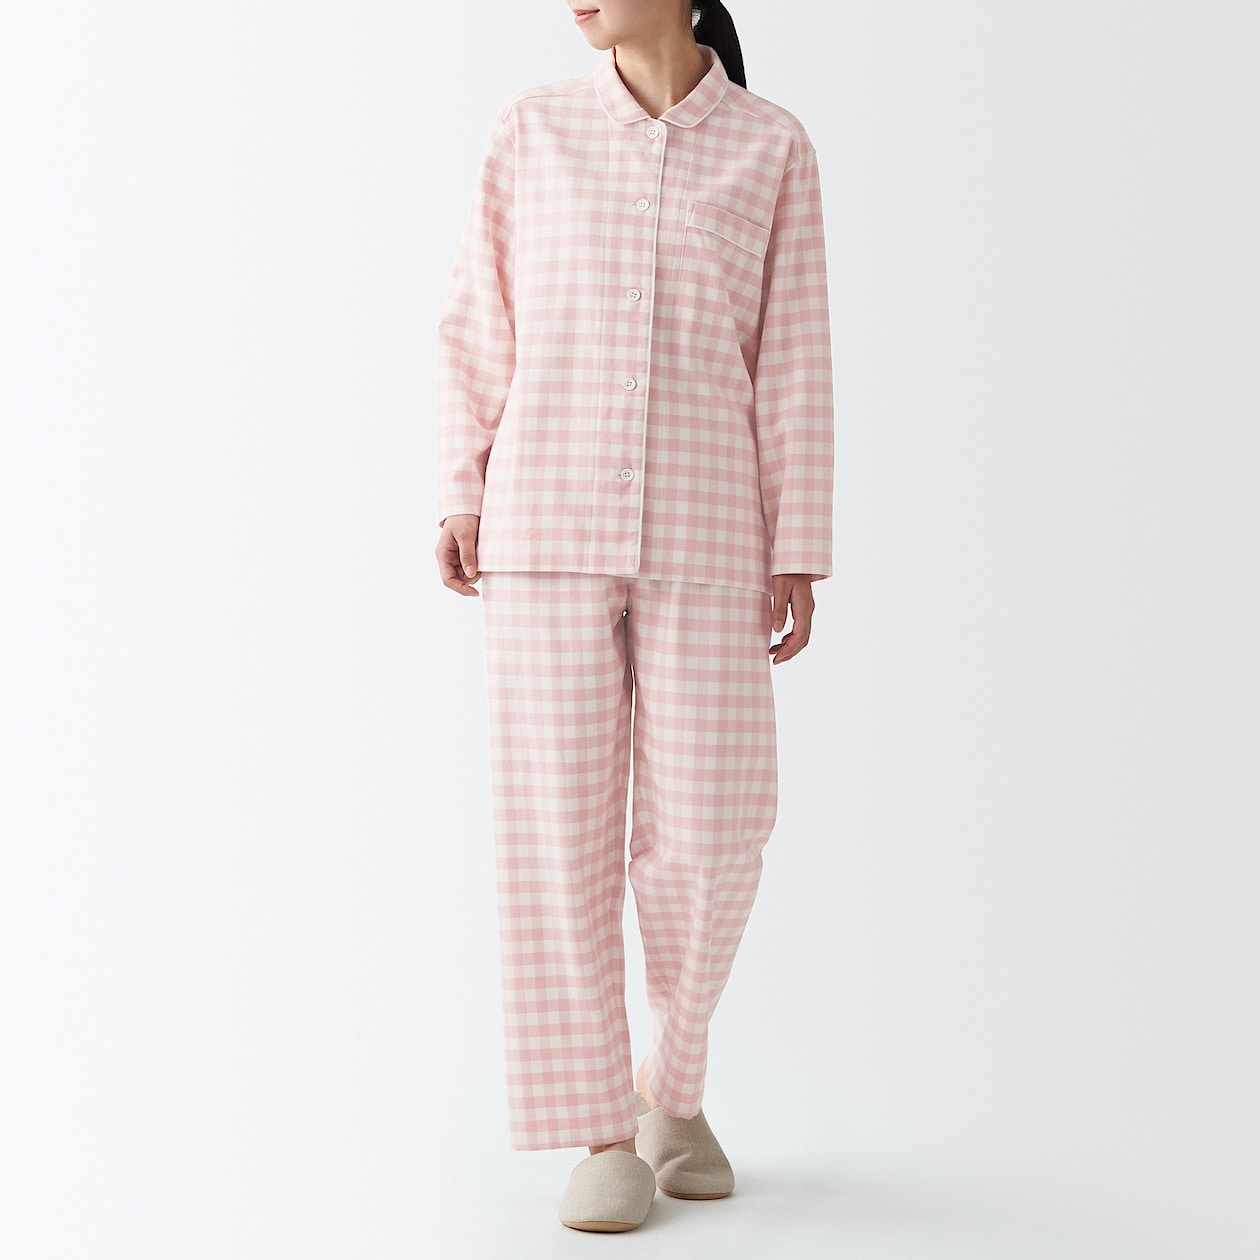 脇に縫い目のないフランネルパジャマ婦人消費税込み3,990円